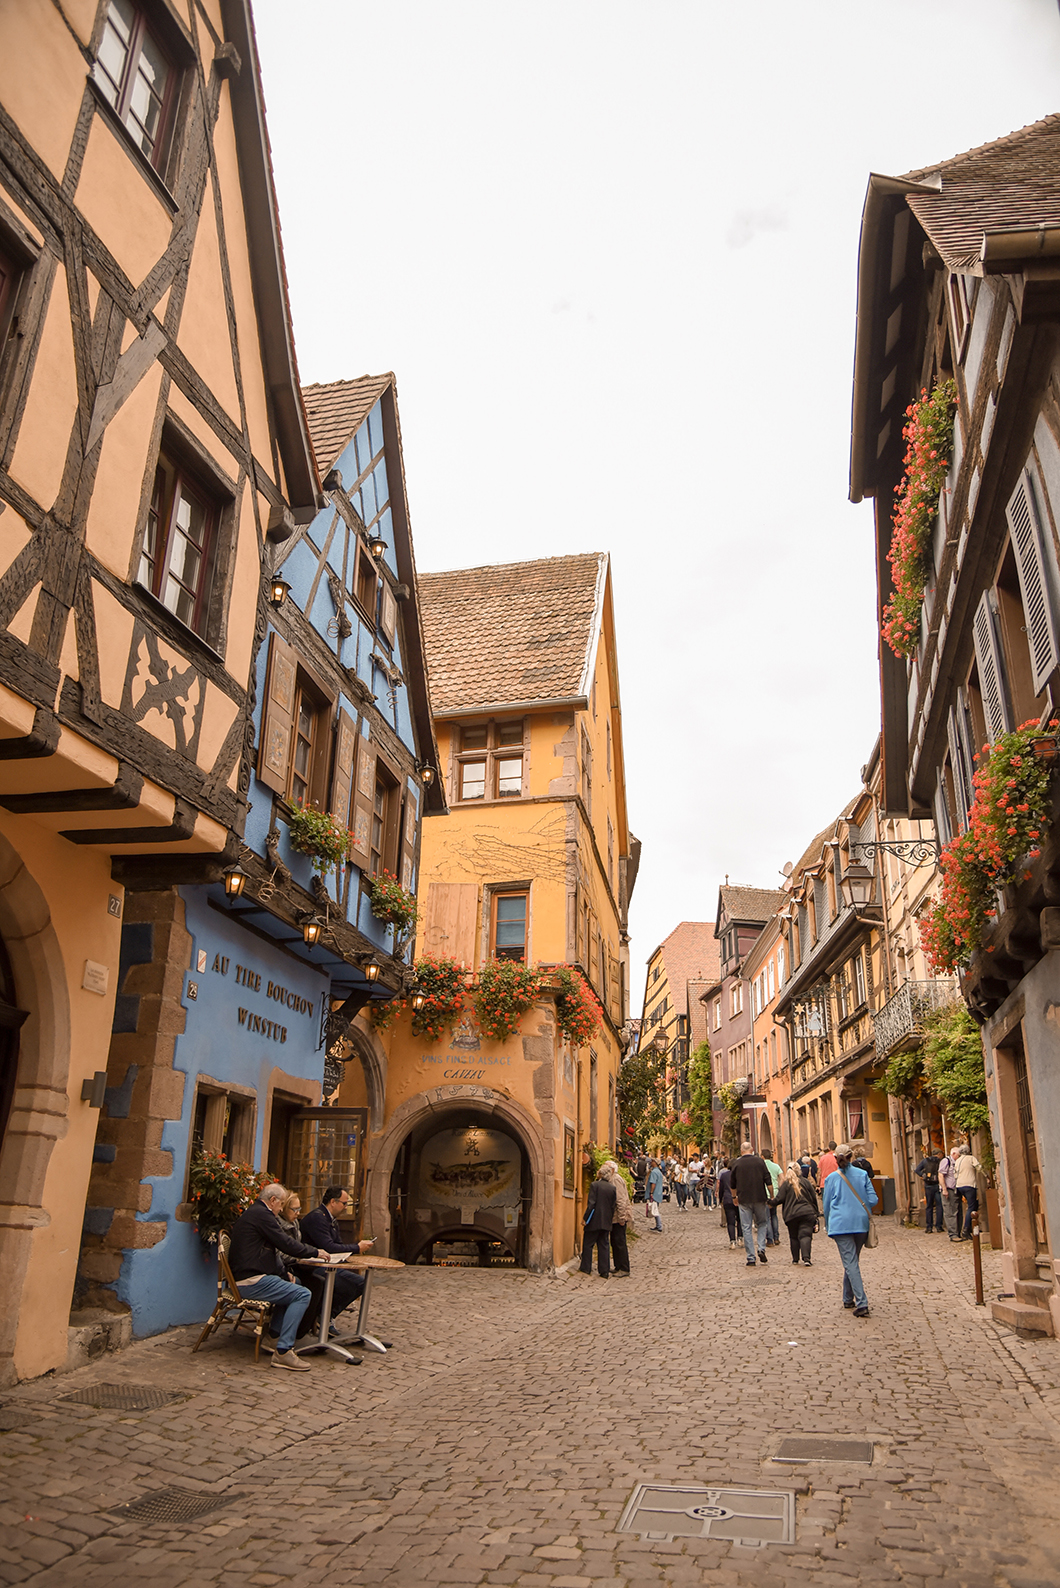 Visite de Riquewihr - route des vins d'Alsace